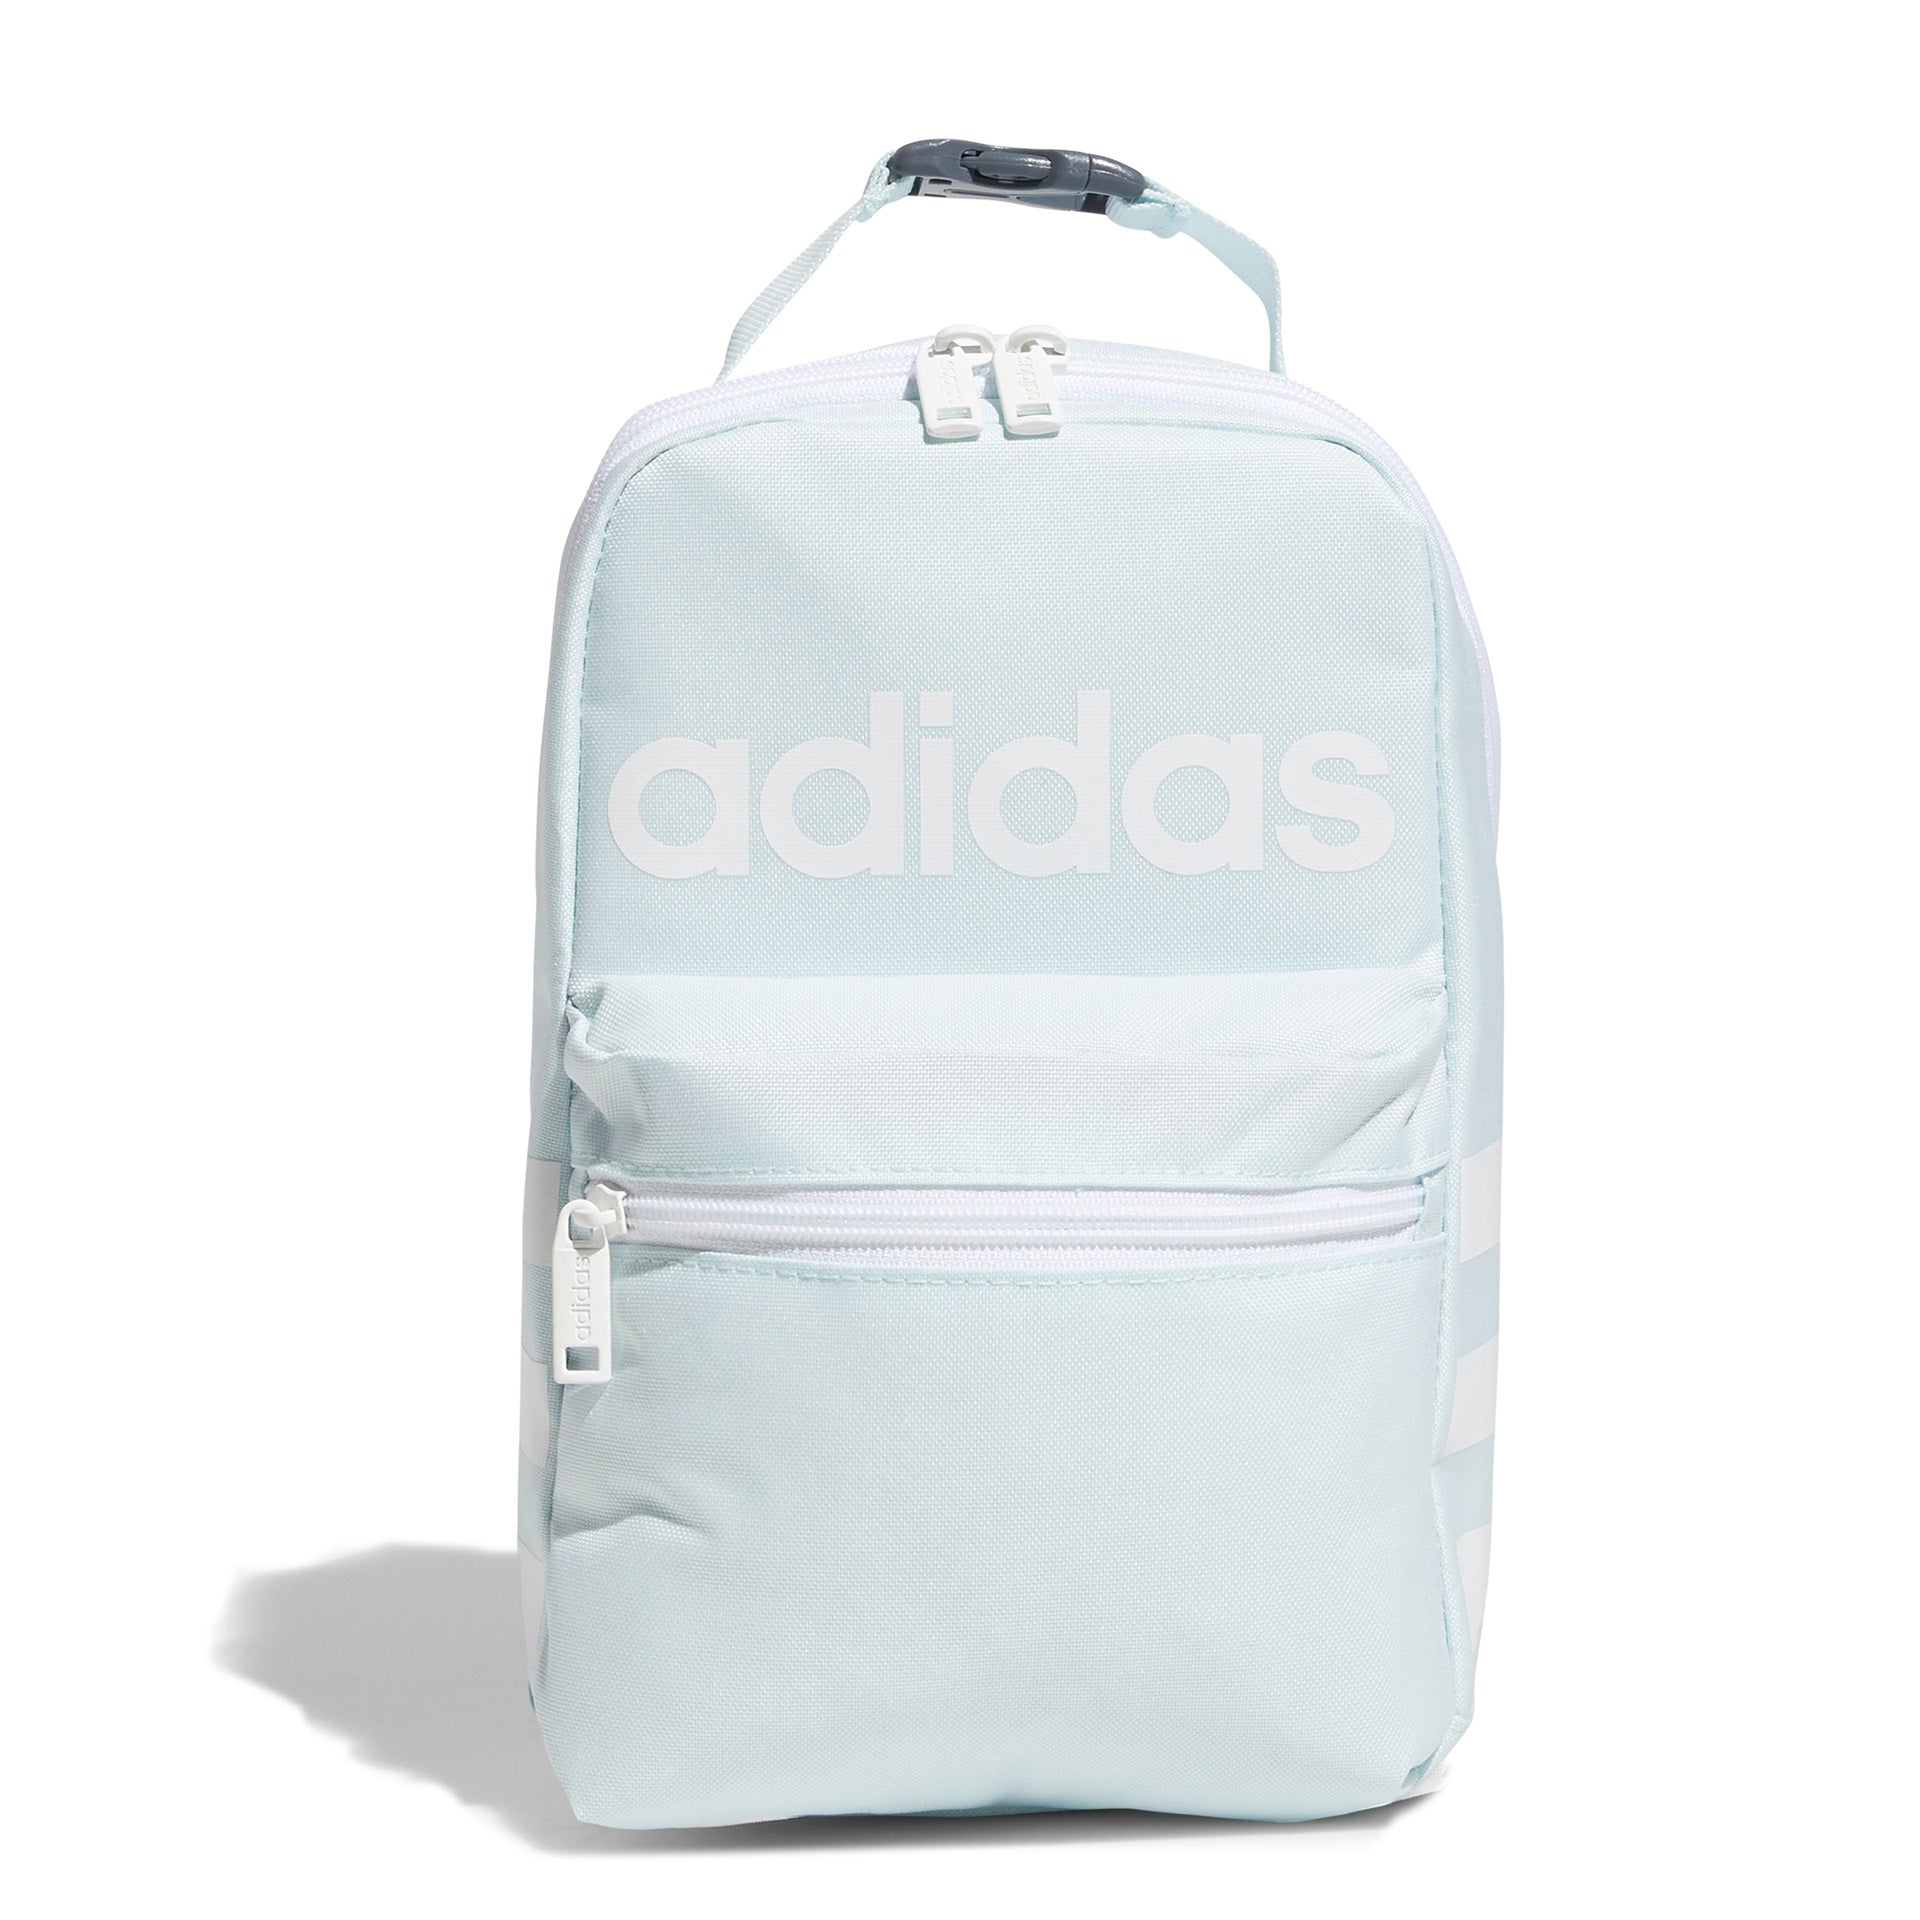 Adidas Santiago II Lunch Box/Bag Insulated | Upper Canada Mall